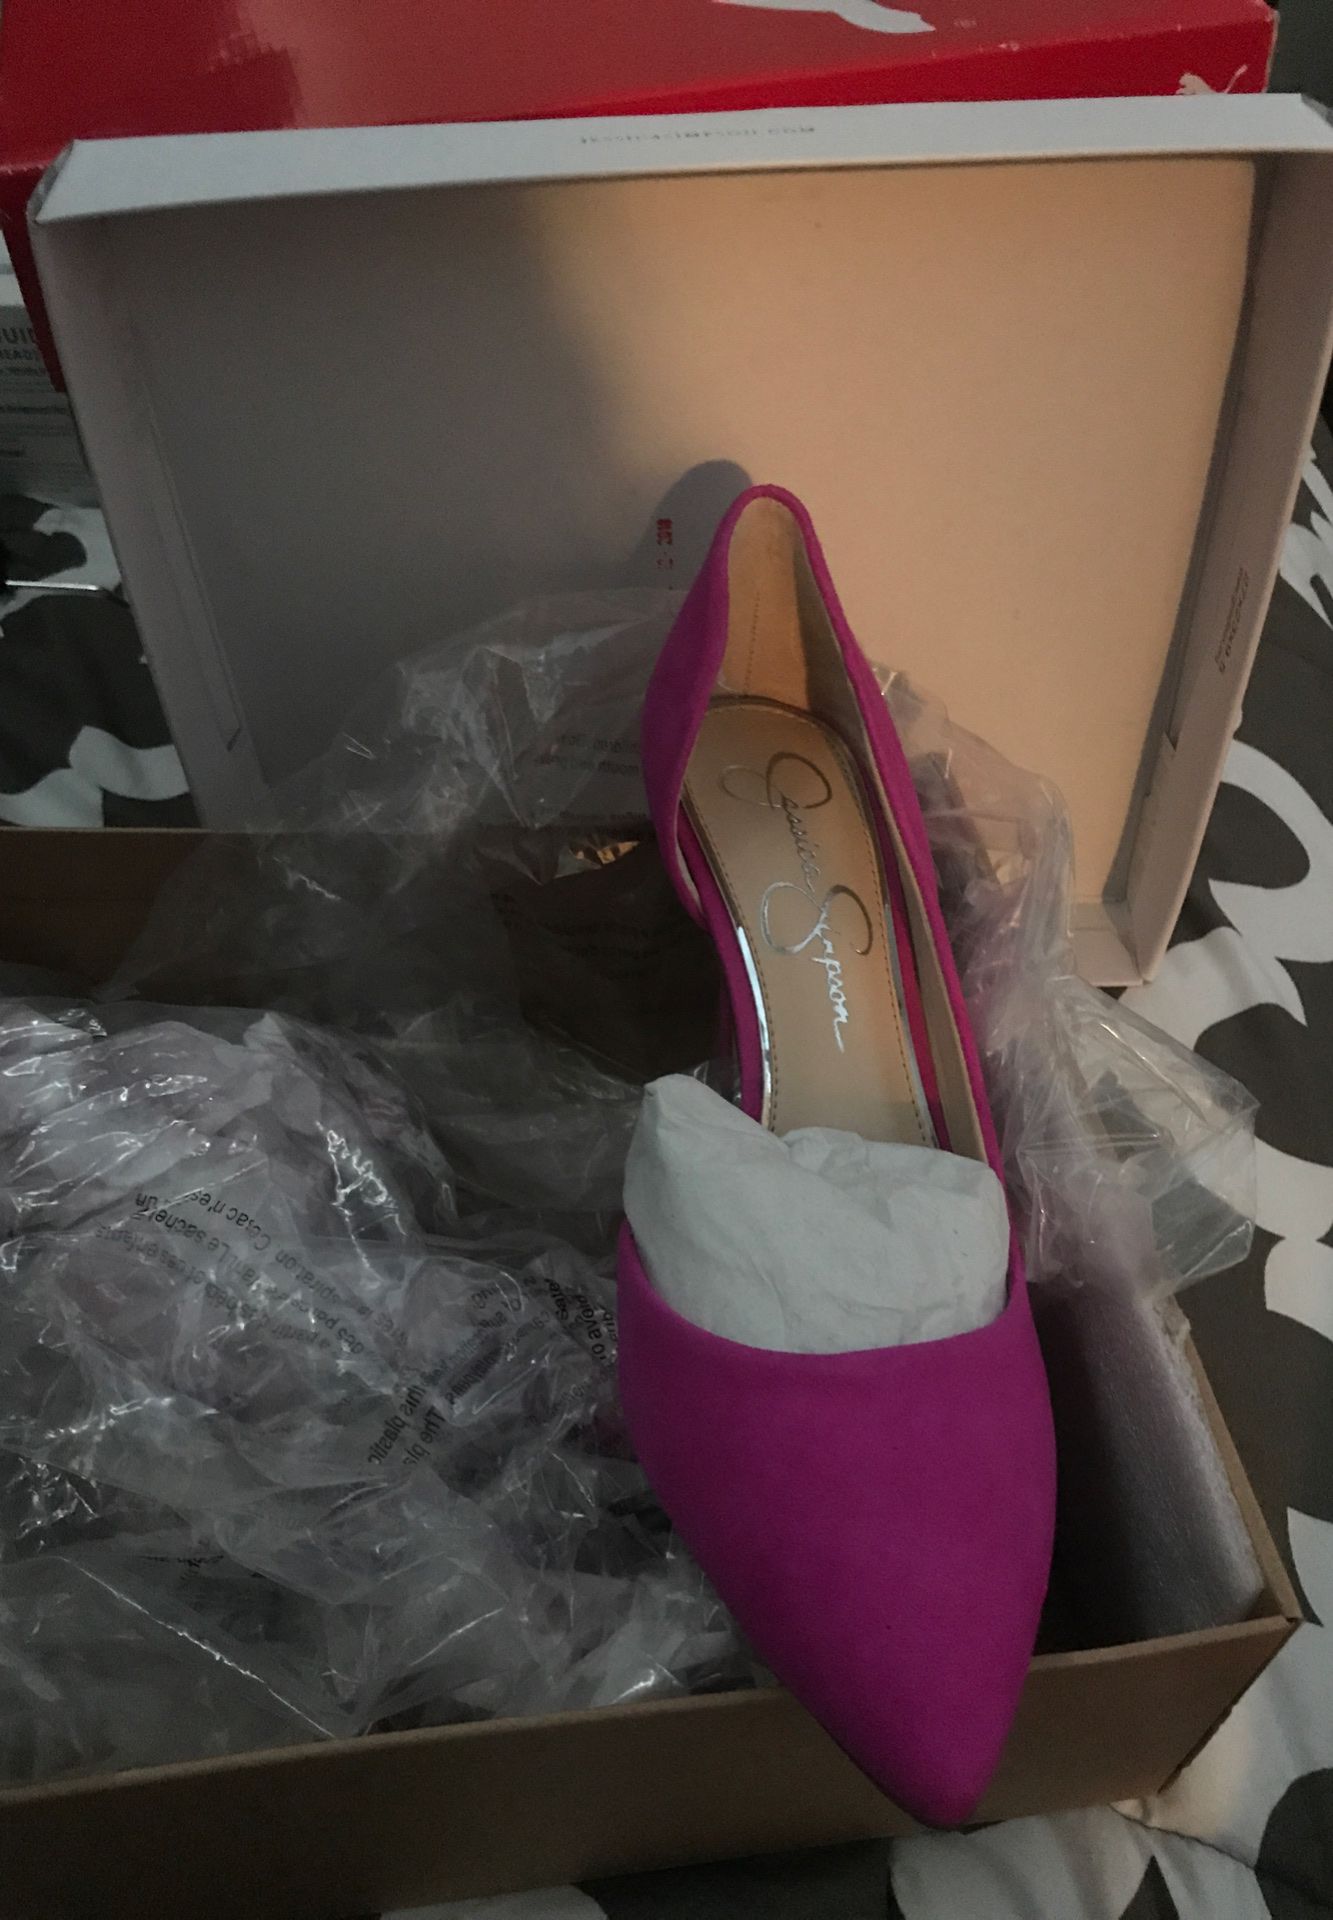 Jessica Simpson Hot Pink heels